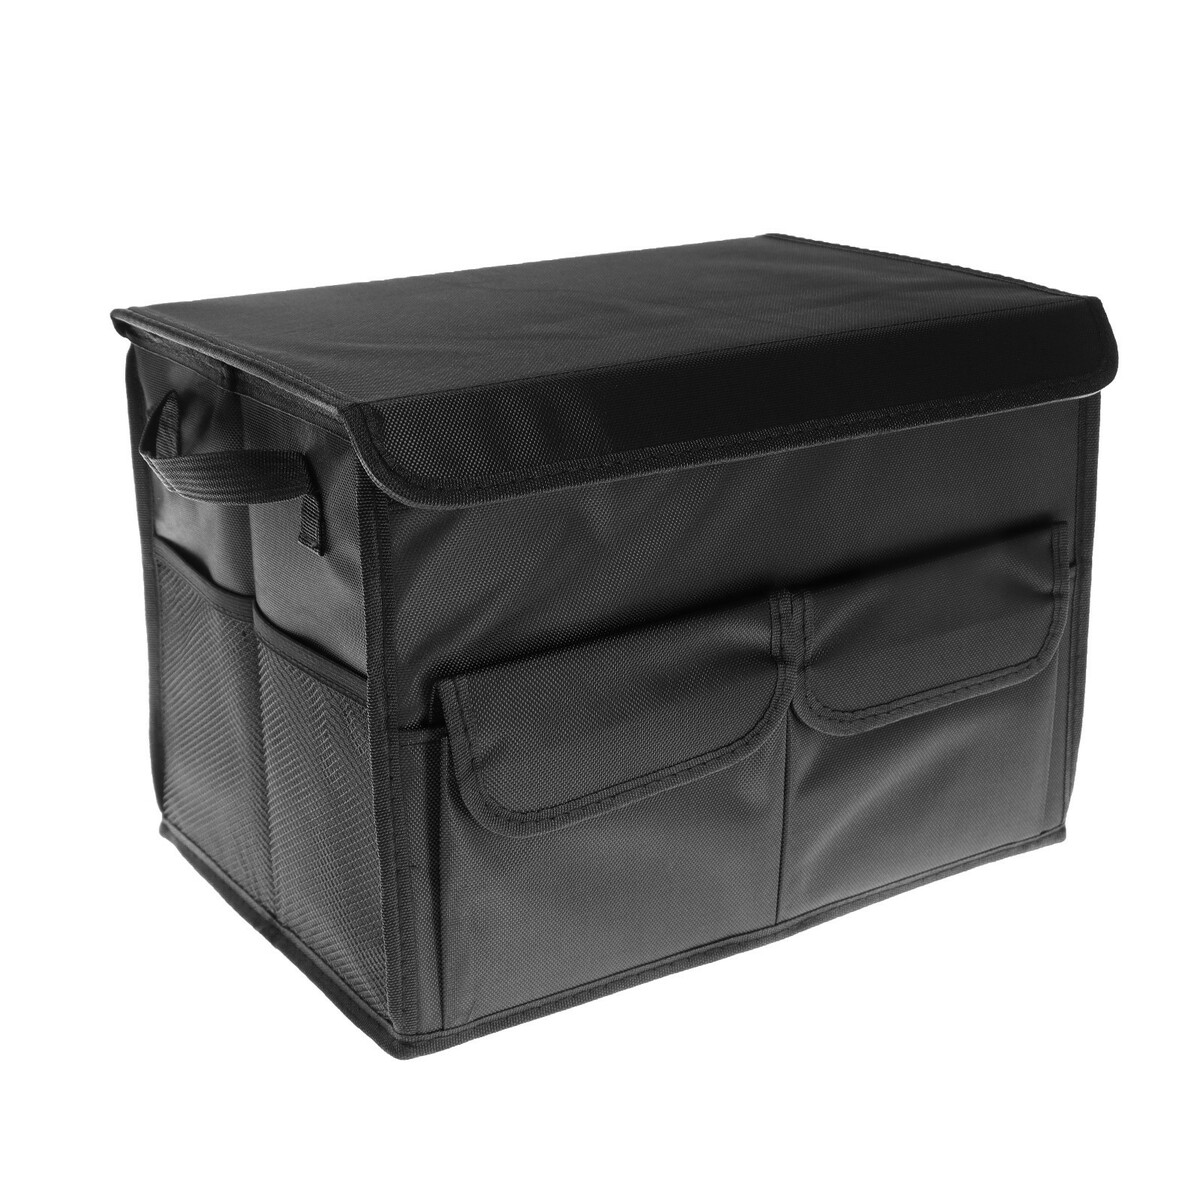 Органайзер в багажник автомобиля, складной, 22 л, 35×25×25 см, оксфорд органайзер на переднее сиденье 50 х 29 см с карманом для планшета оксфорд